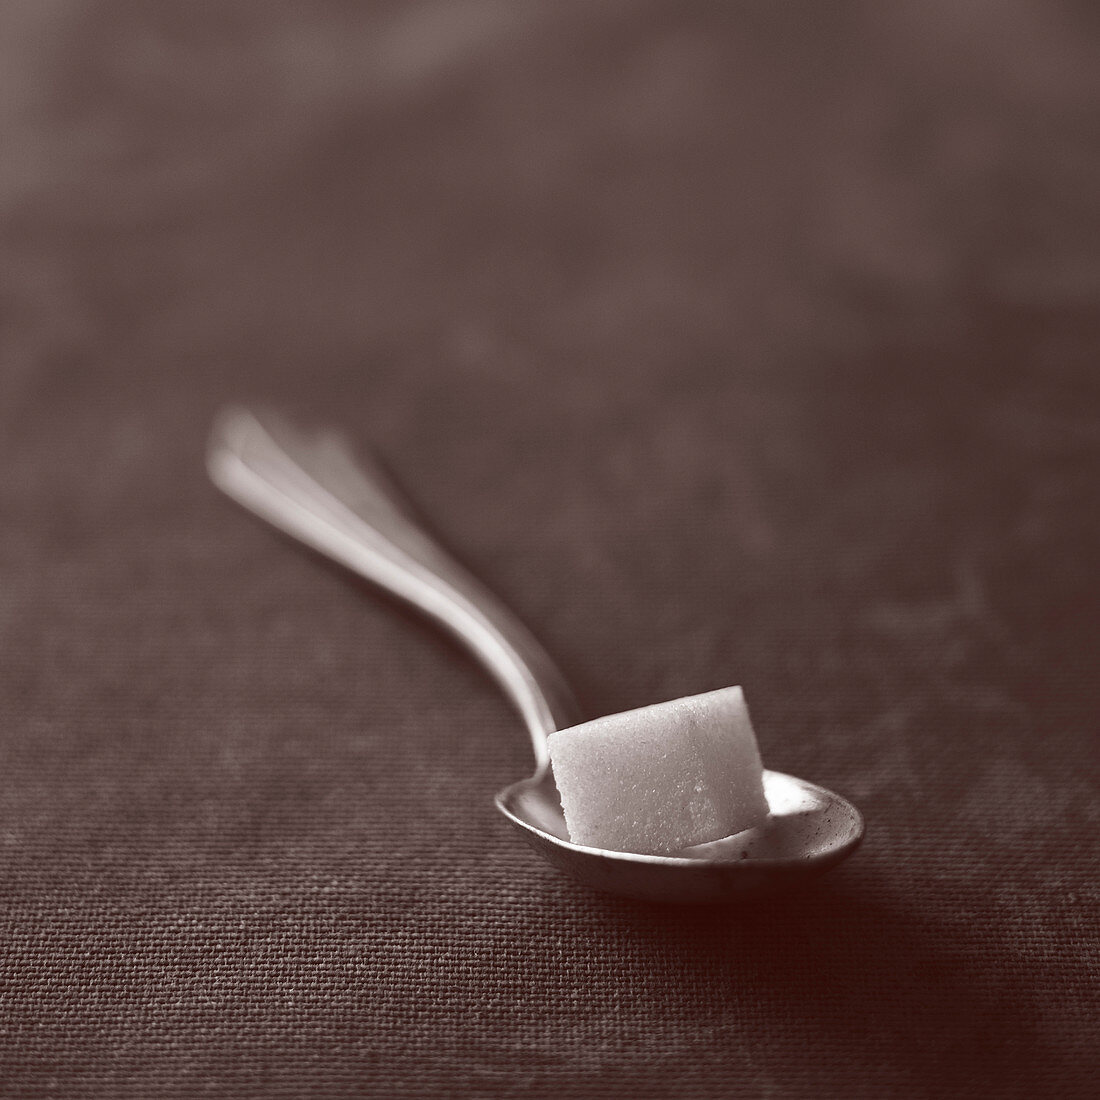 One sugar cube on a coffee spoon